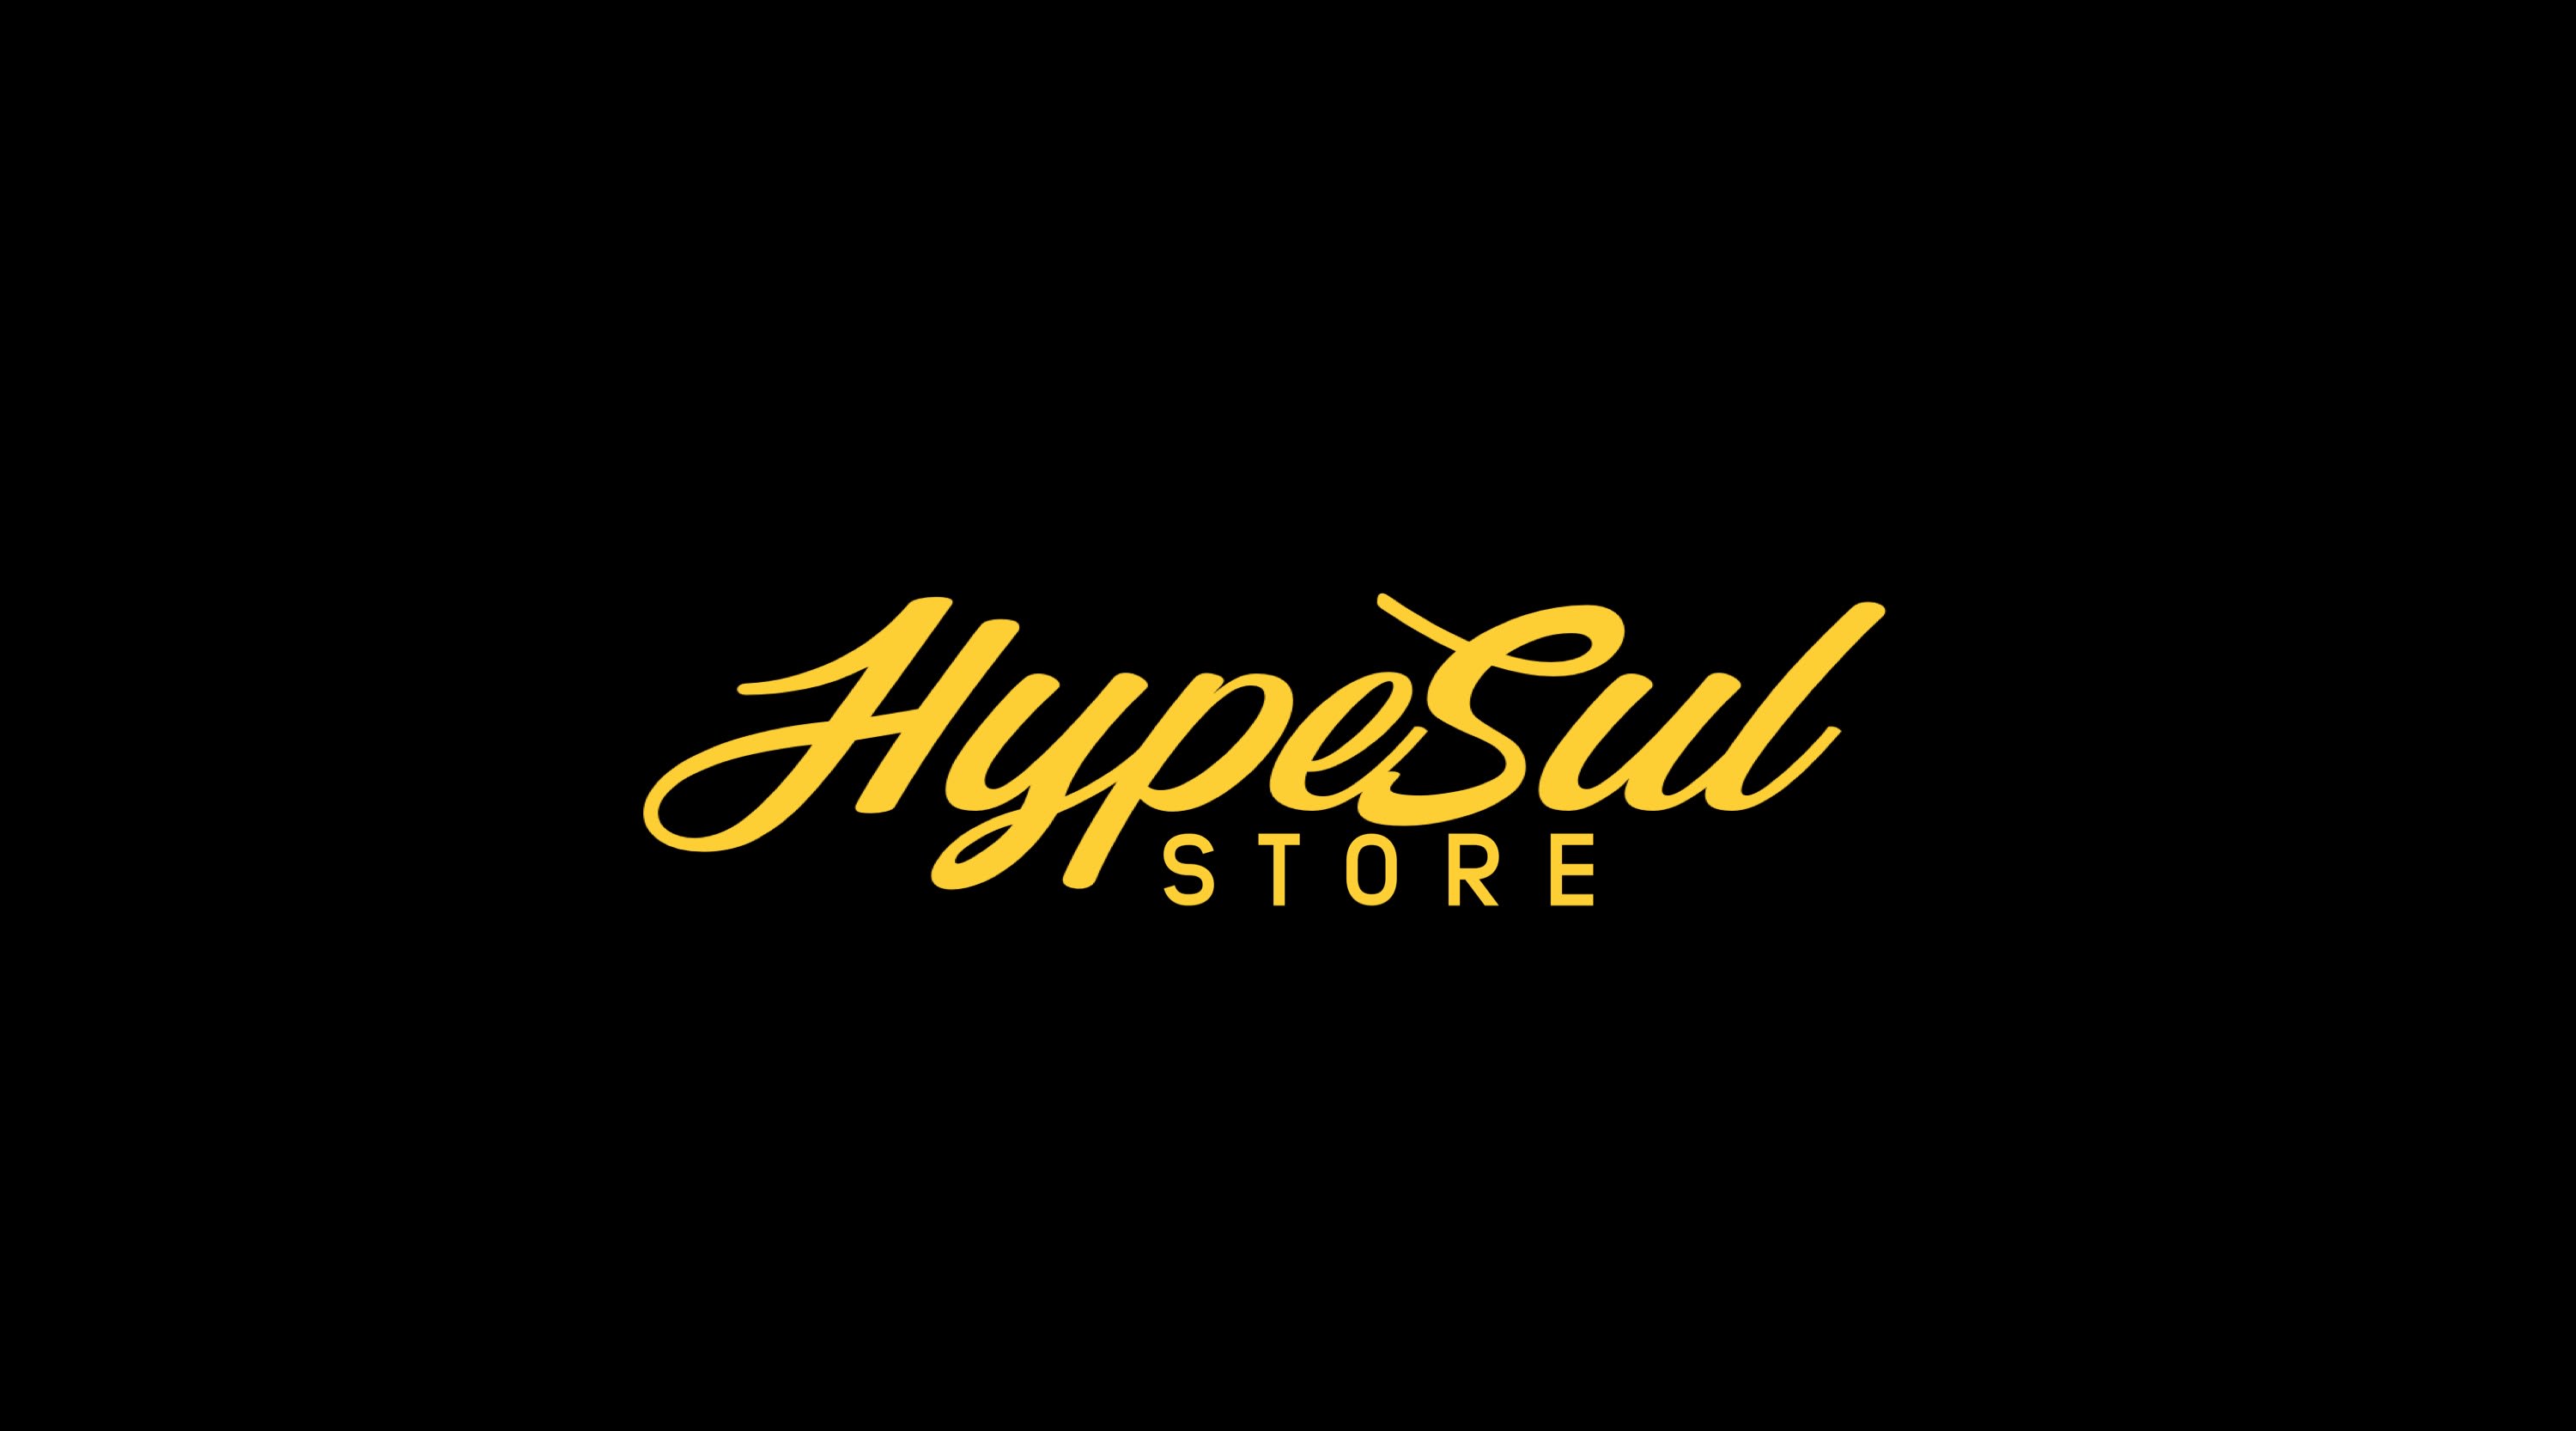 Hypesul Store